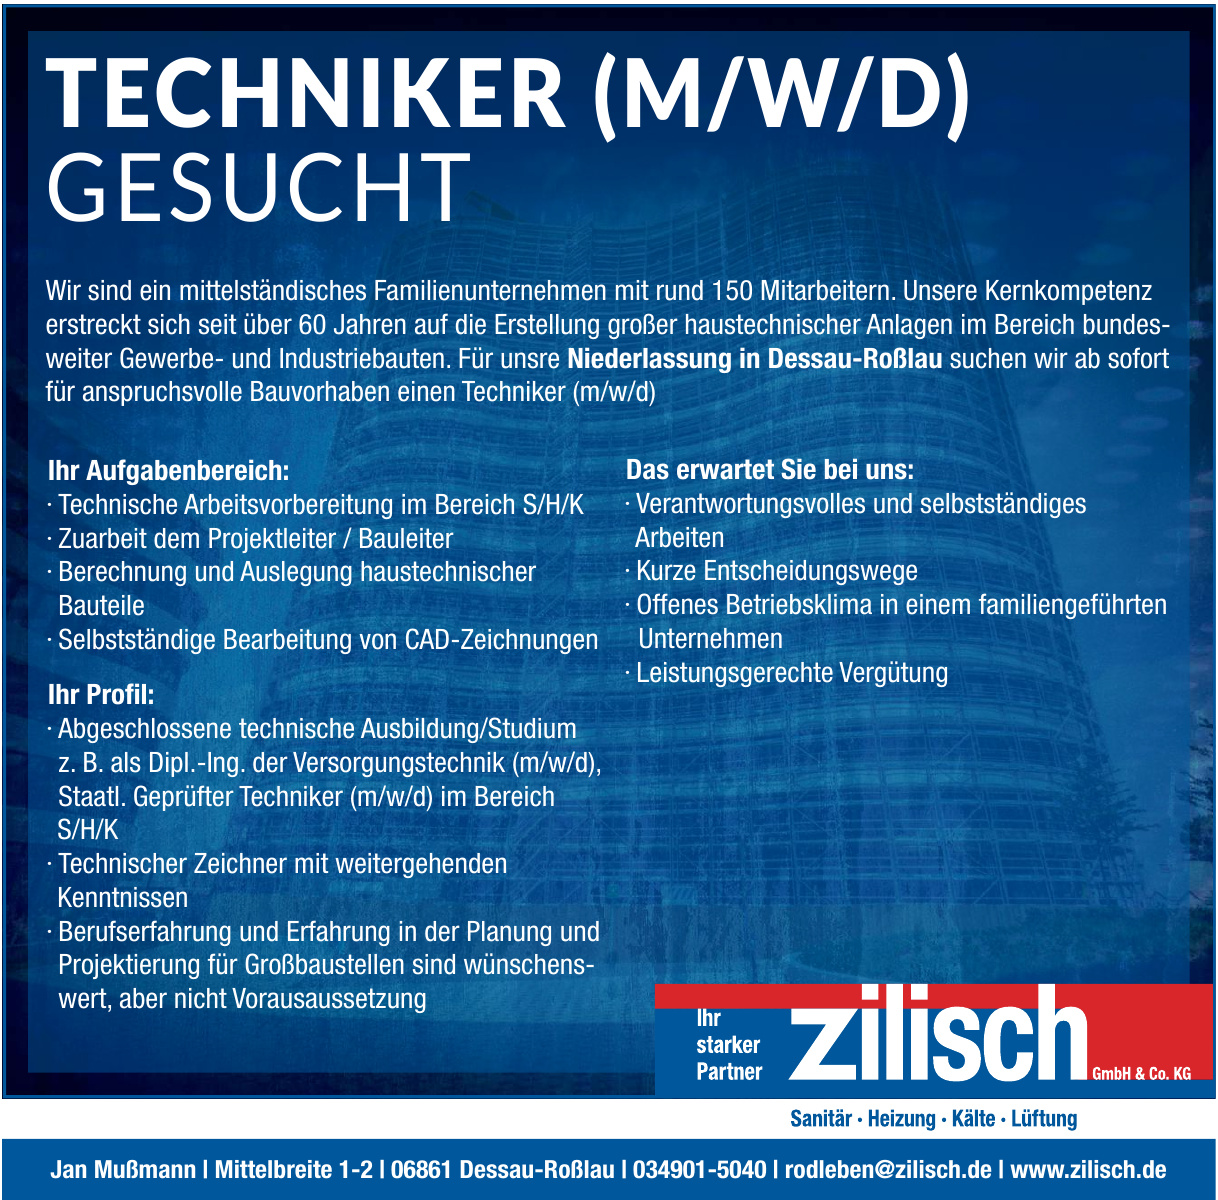 Zilisch GmbH & Co. KG